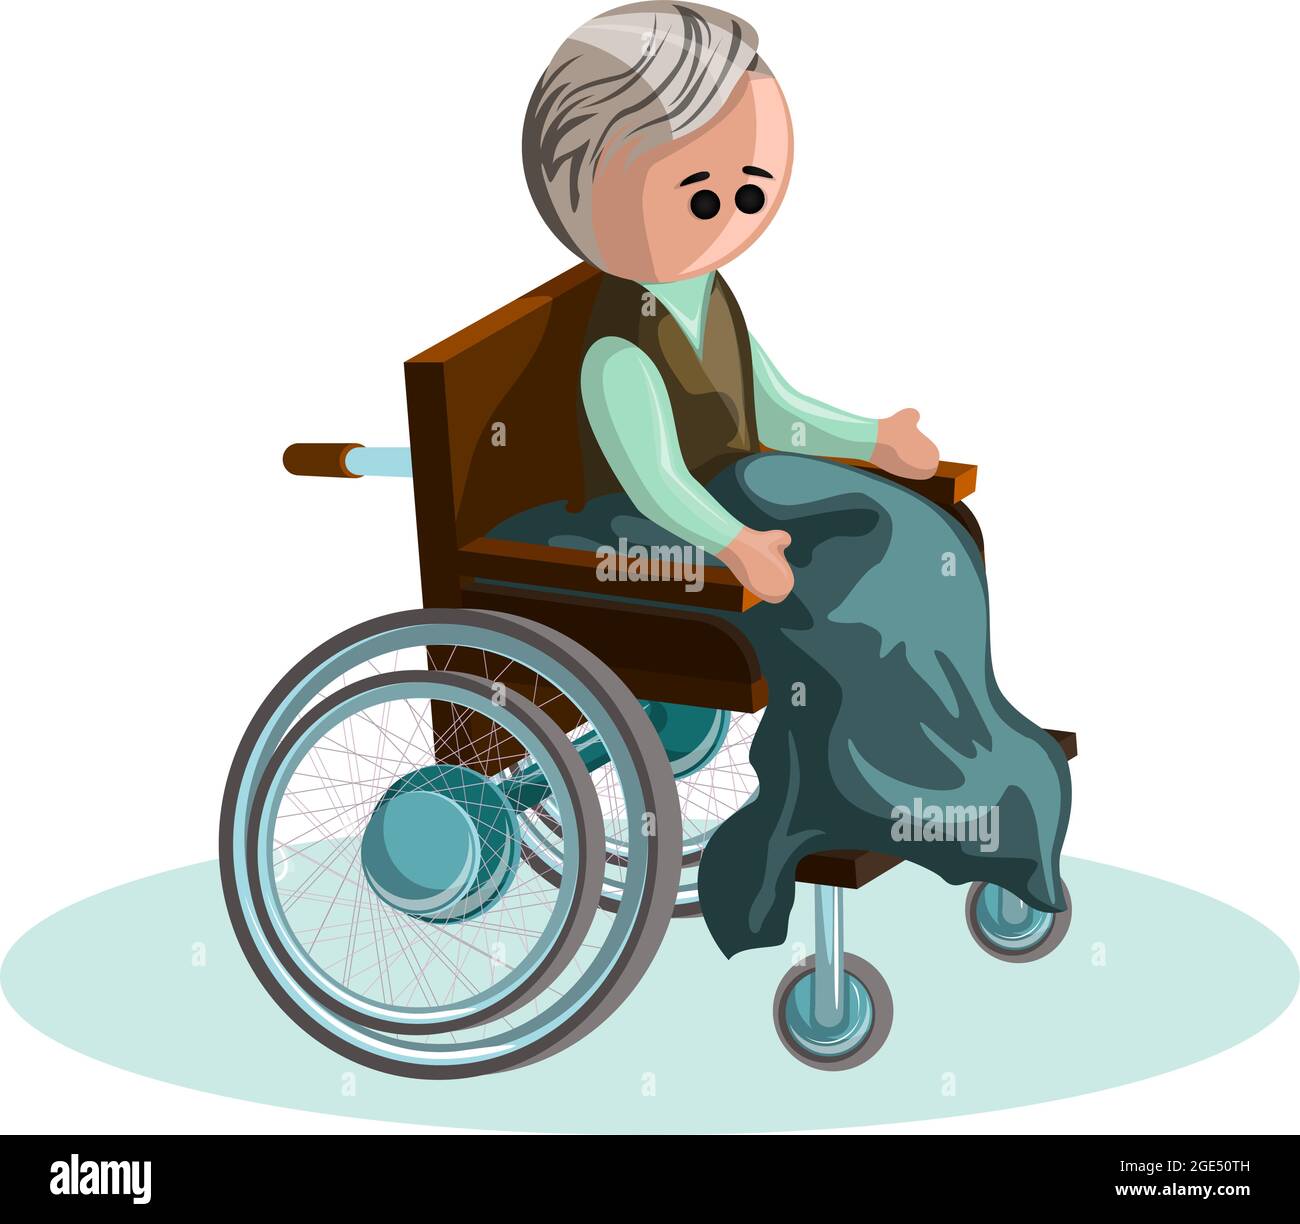 Immagine vettoriale di un uomo di mezza età su una sedia a rotelle. EPS 10. Concetto. Immagine su sfondo bianco Illustrazione Vettoriale